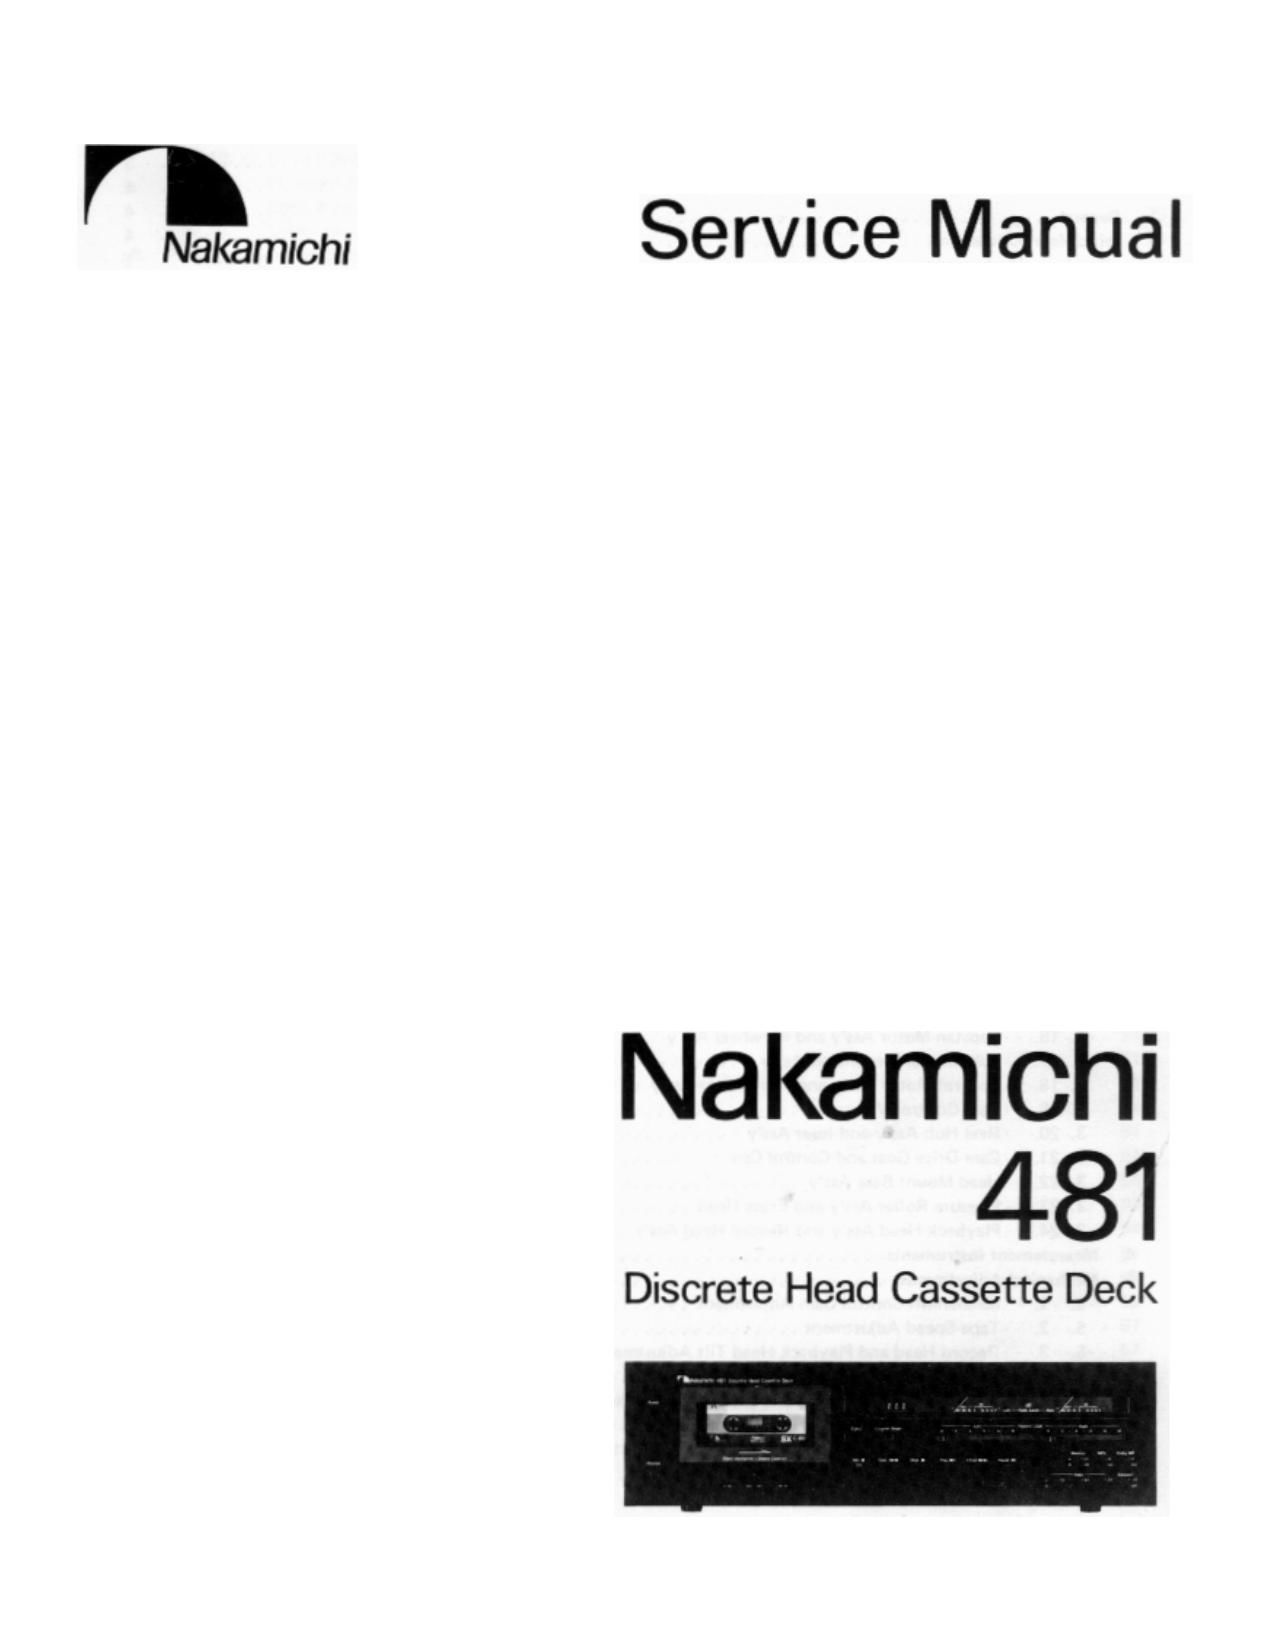 Nakamichi 481 Service Manual